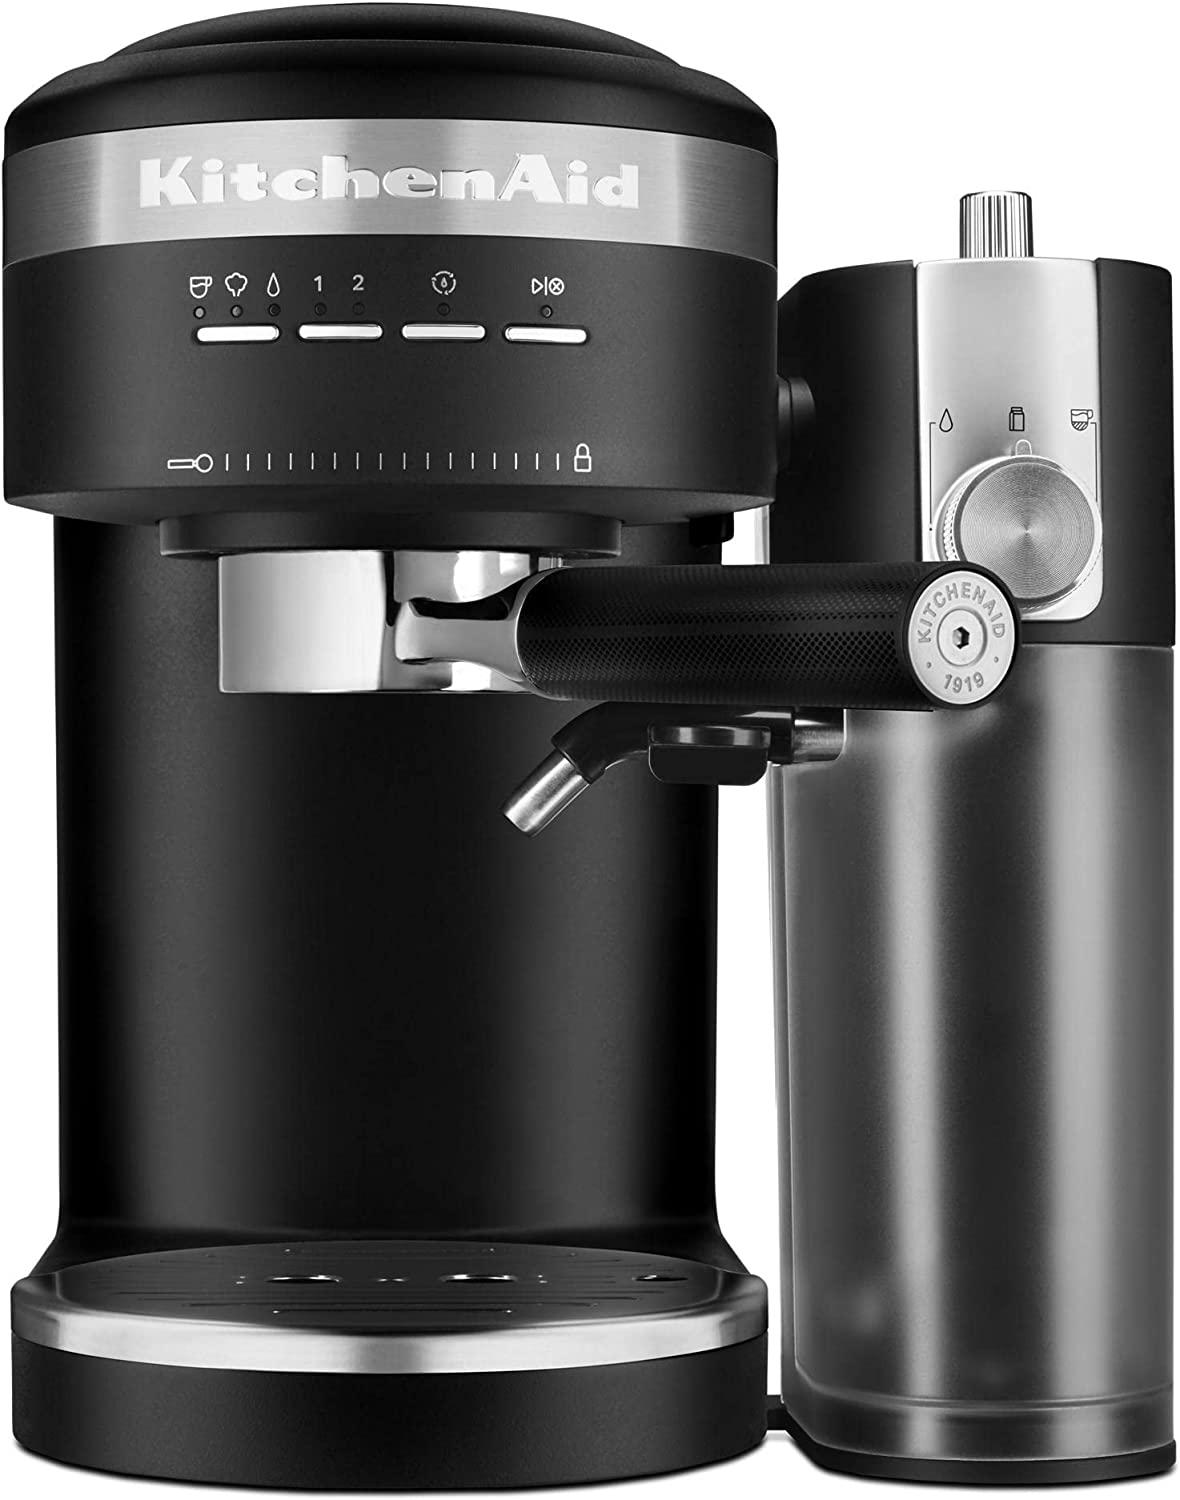 KitchenAid Semi-Automatic Espresso Machine w/ Automatic Milk Frother Attachment (Matte Black) $246.60 + Free Shipping